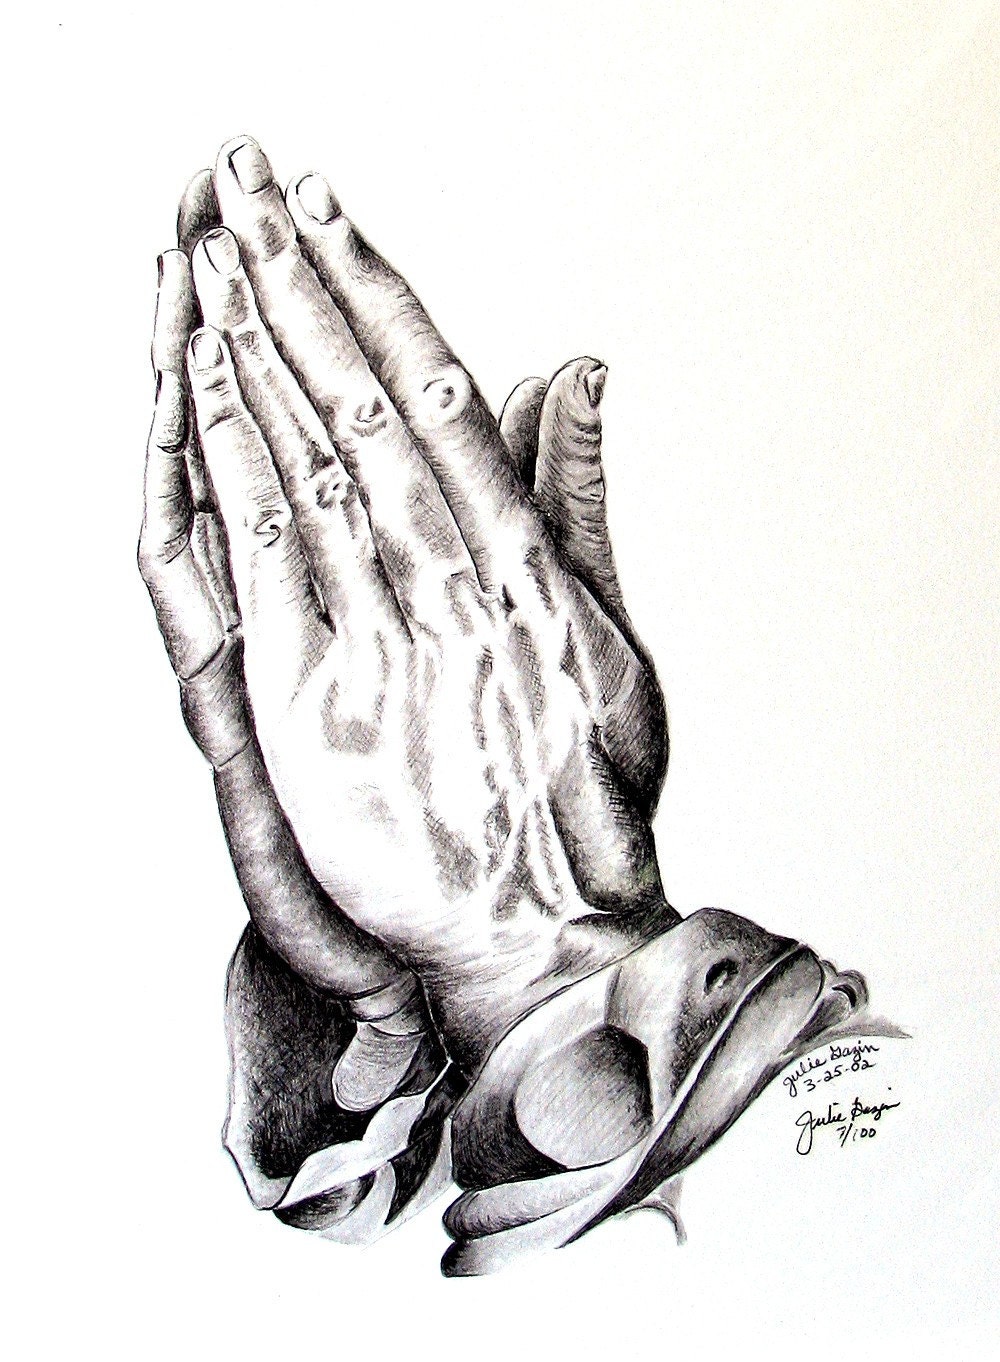 praying-hands-art-print-artwork-pencil-drawing-prayerfully-praying